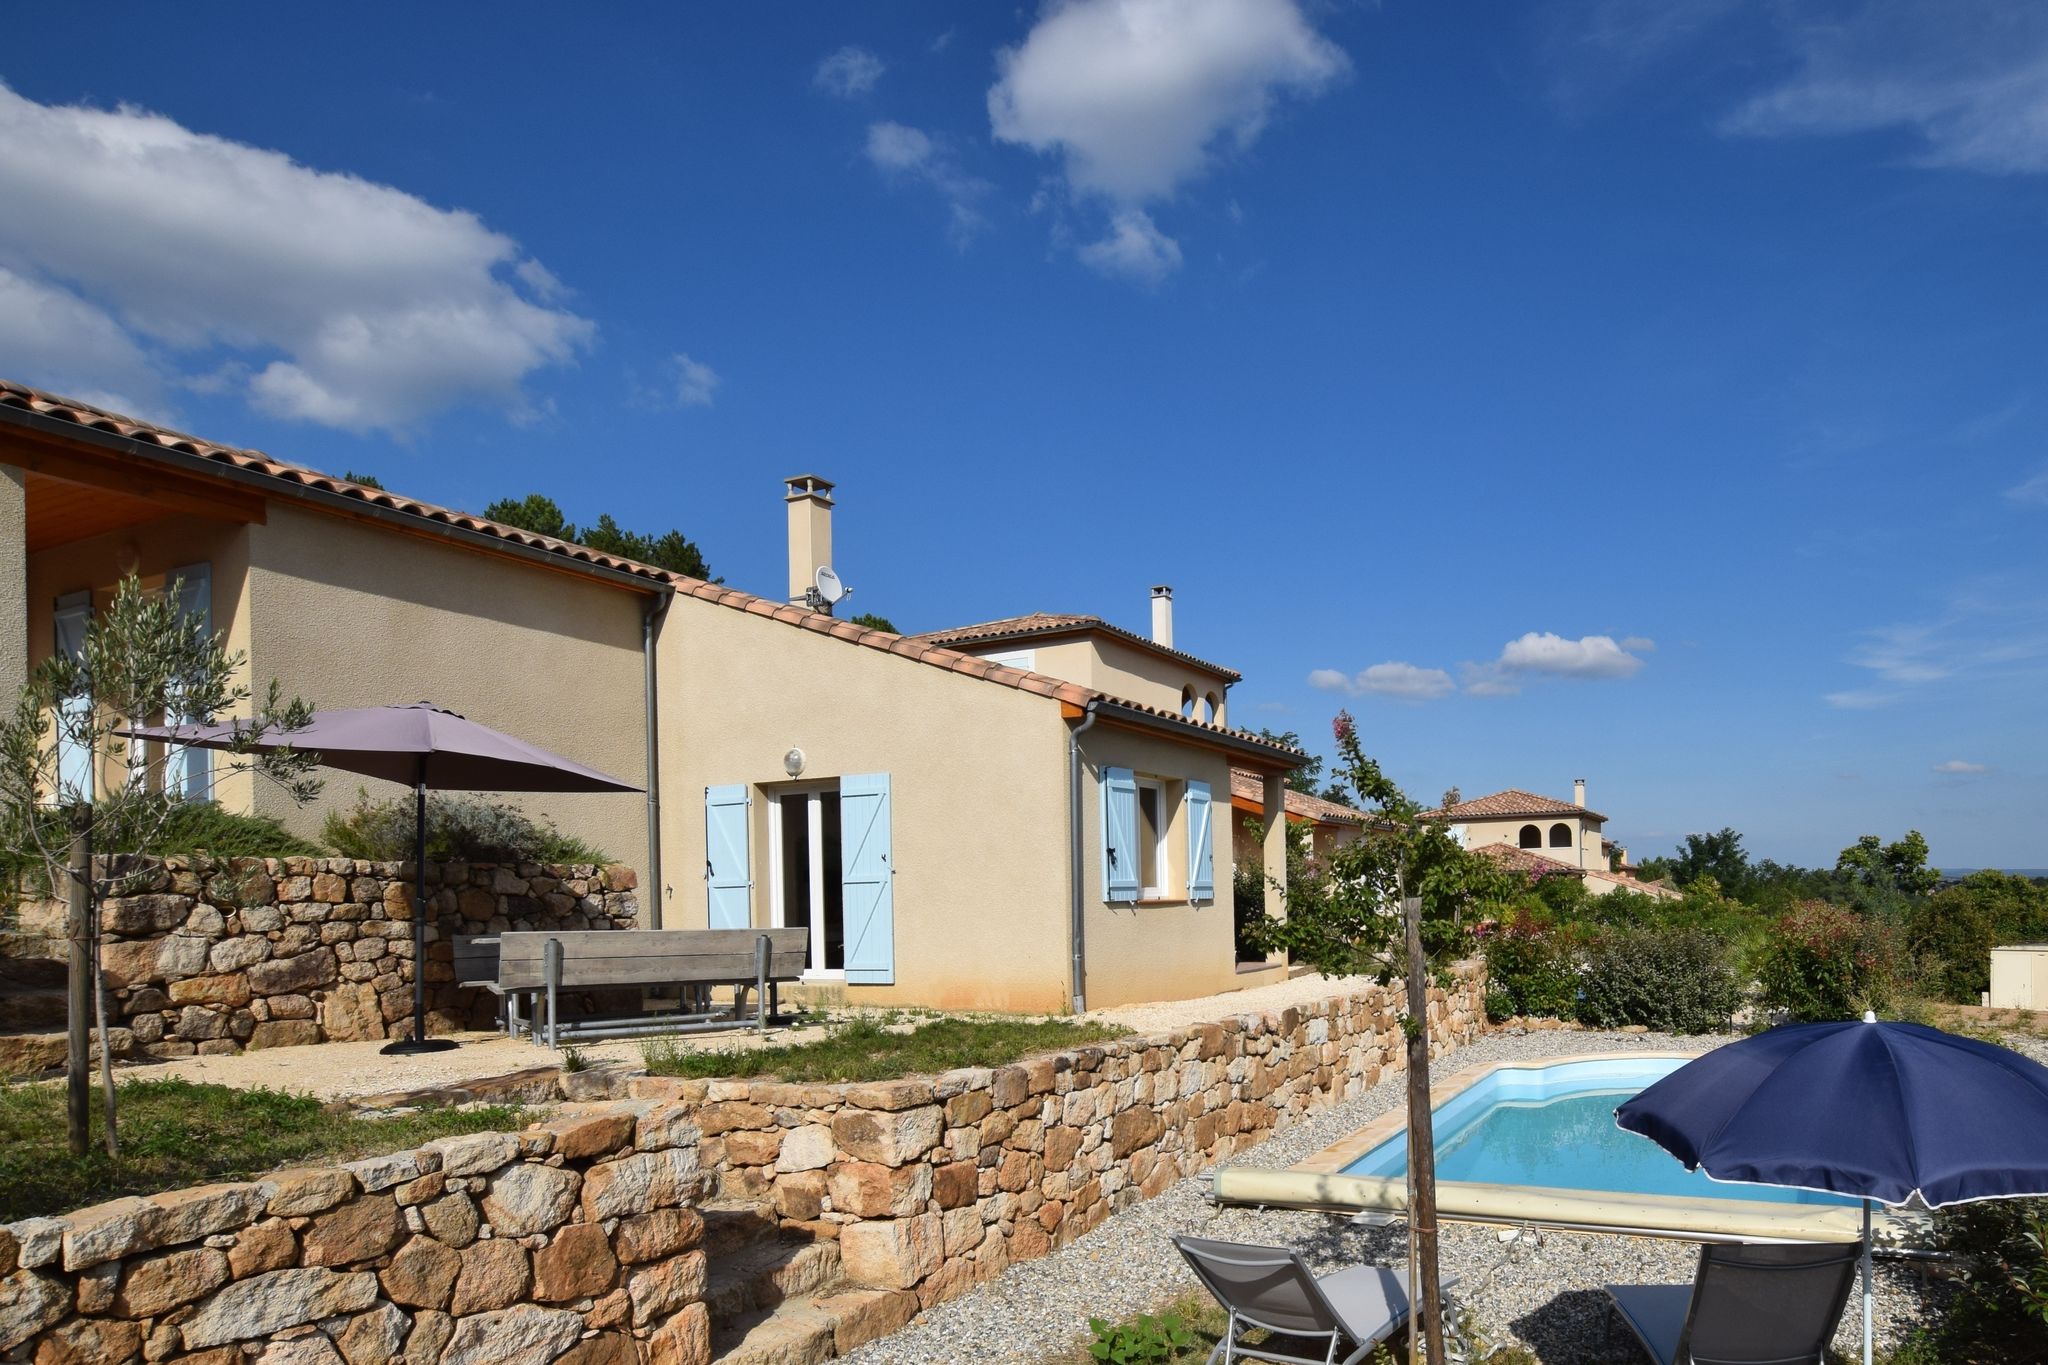 Nieuwe vakantievilla met privé zwembad in hartje Ardèche met prachtig uitzicht